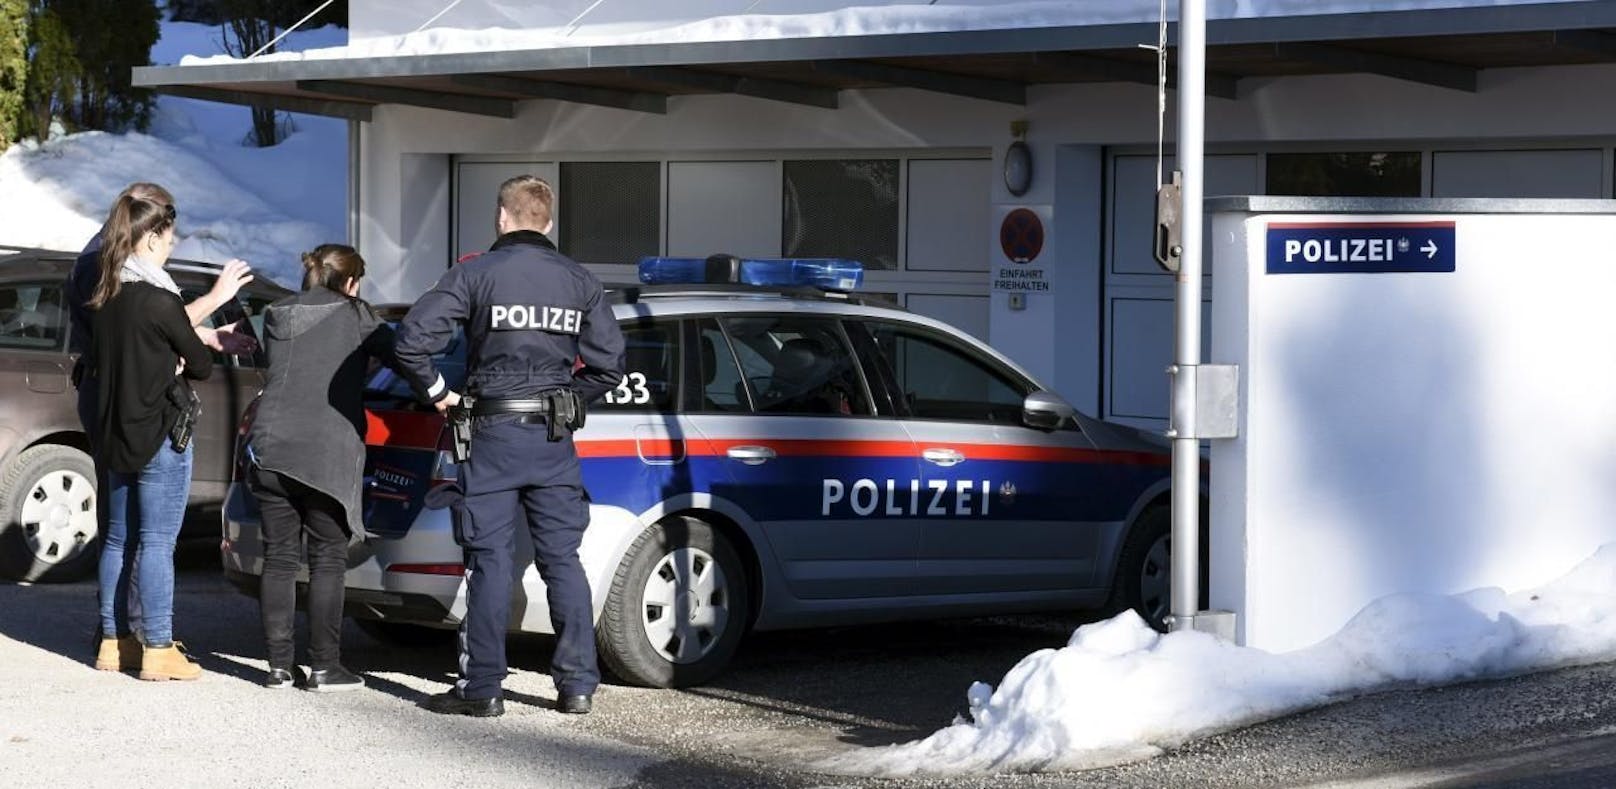 Polizei-Einsatz (Archivfoto)